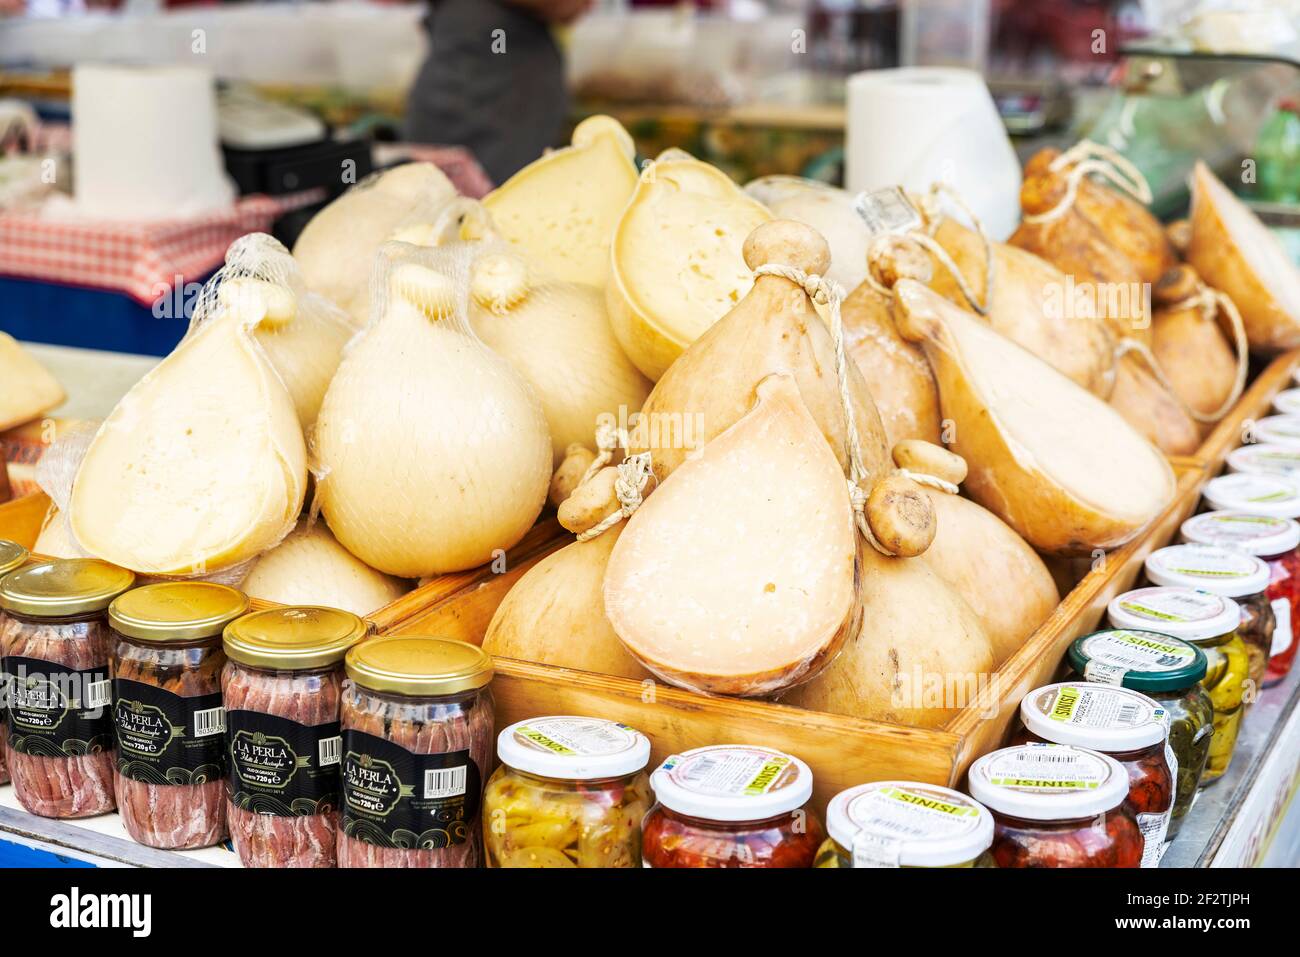 Napoli, Italia - 9 settembre 2019: Esposizione di prodotti tipici come il formaggio Caciocavallo in un mercato di Street food in Via Toledo, Napoli, Italia Foto Stock